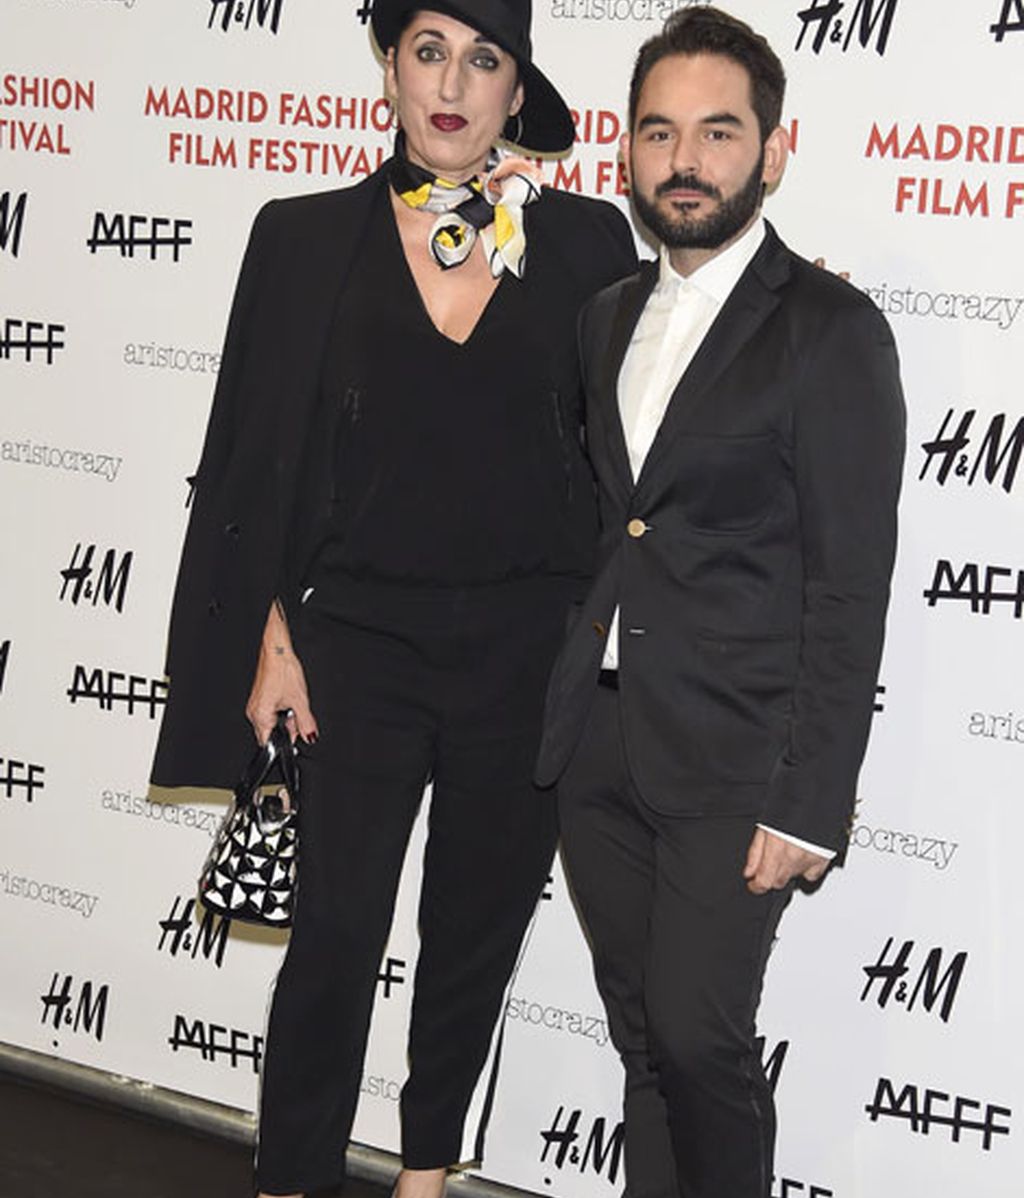 Patricia Conde, Rossy de Palma... los vips en la clausura de la Madrid Fashion Film